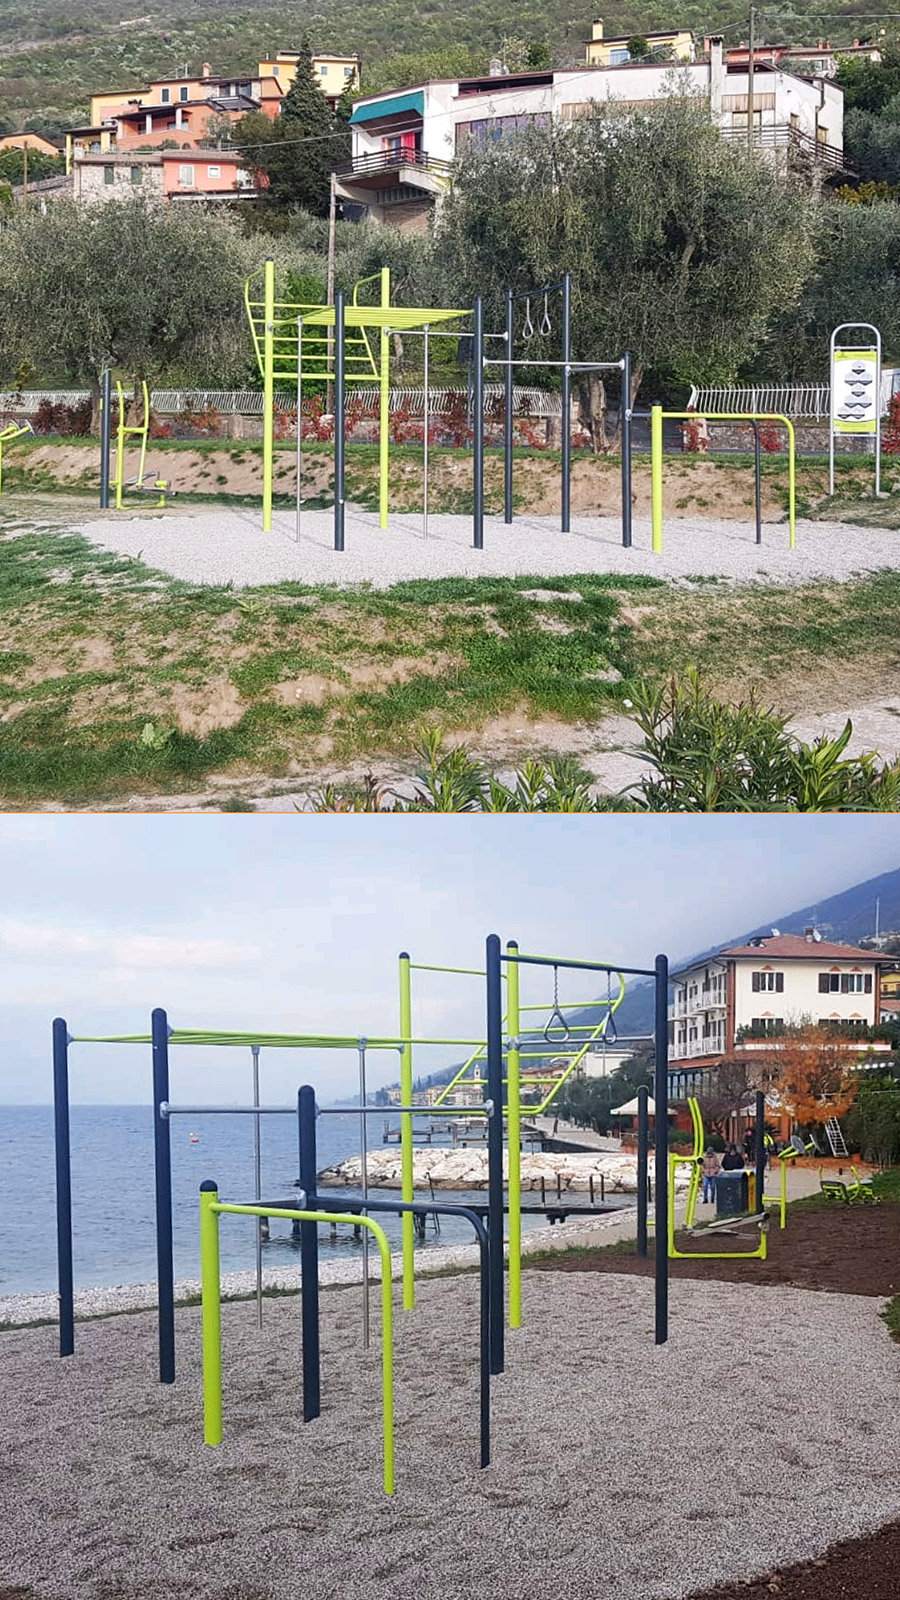 The calisthenics facilities are located along the new lake promenade of Brenzone sul Garda